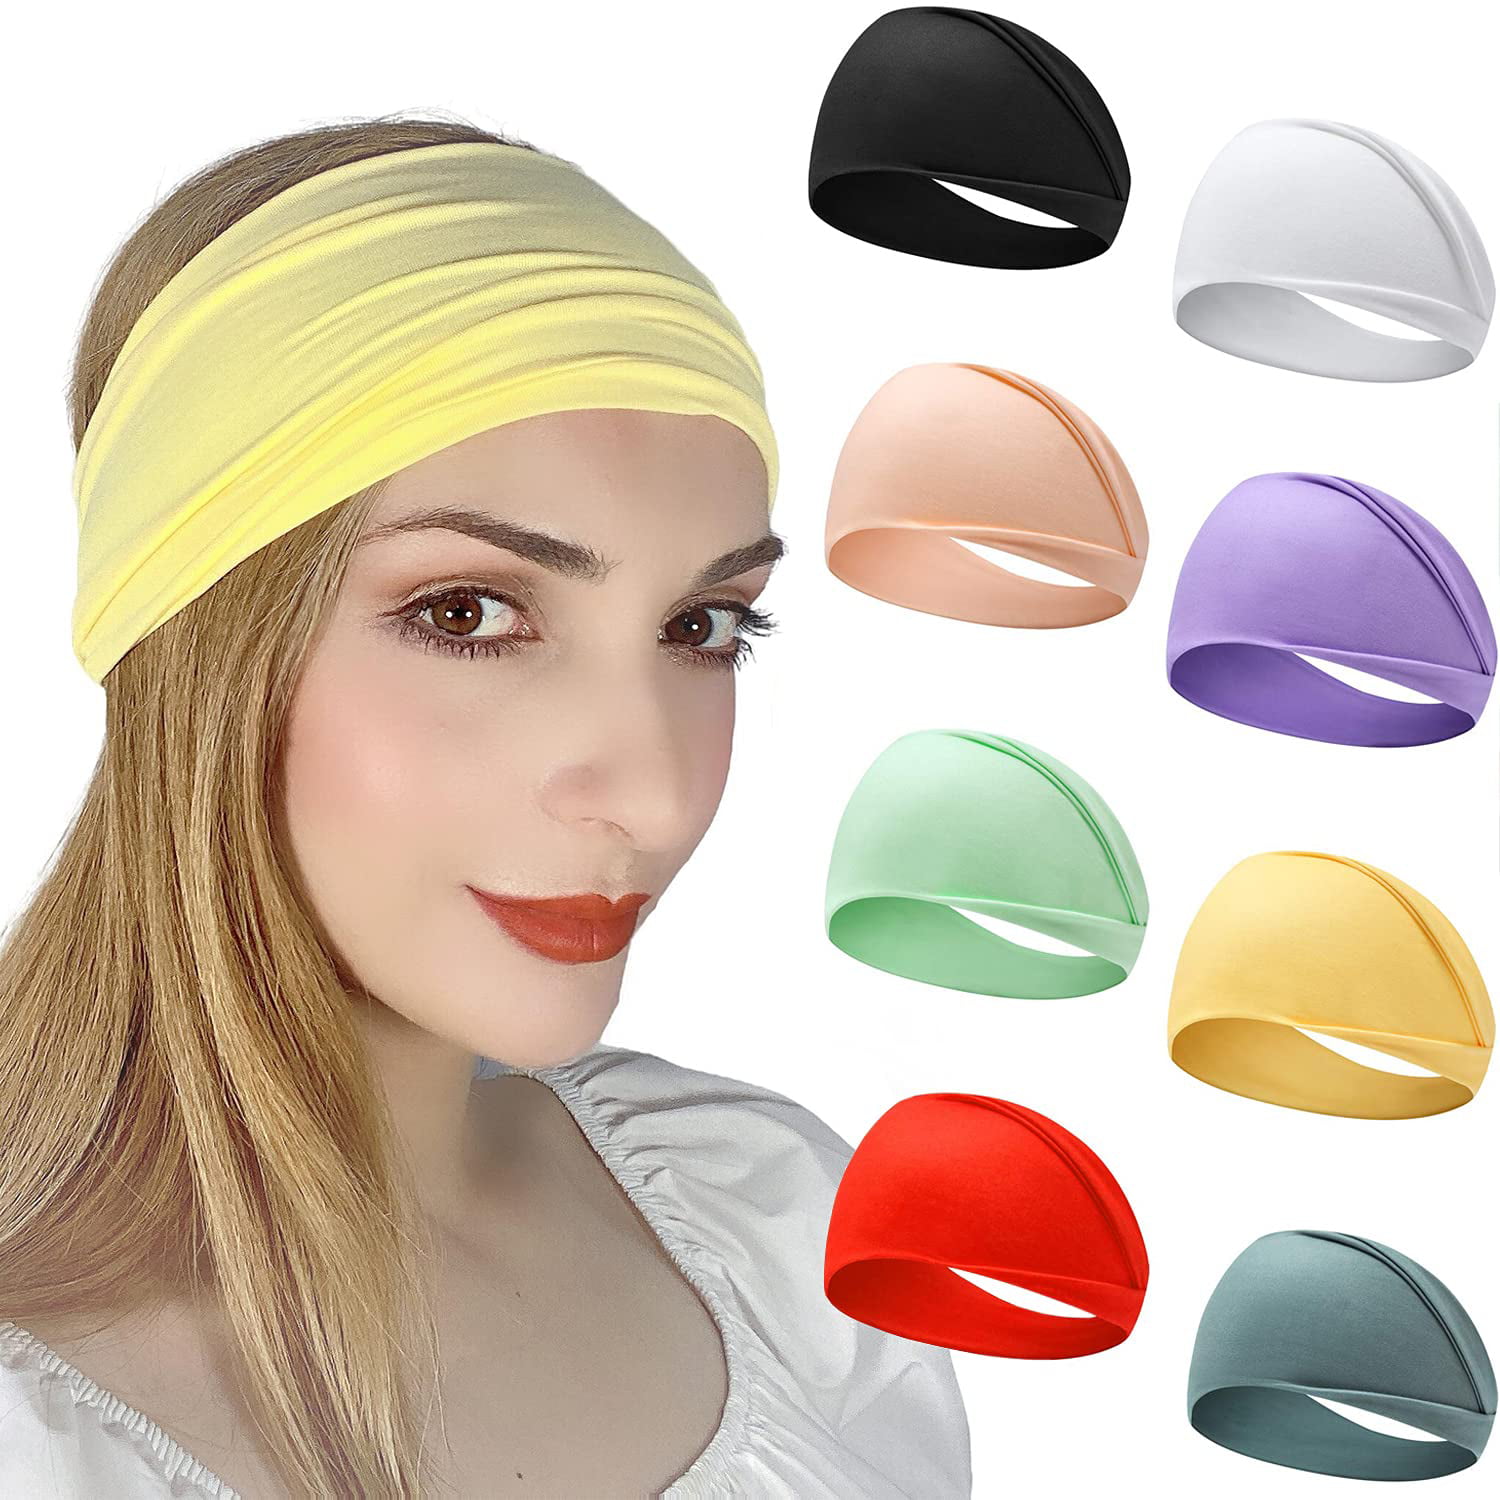 Football Headband Mustard headband Twist Headband,Yoga Headband,Fitness Headband Solid Color Headband Wide headband Nurse headband